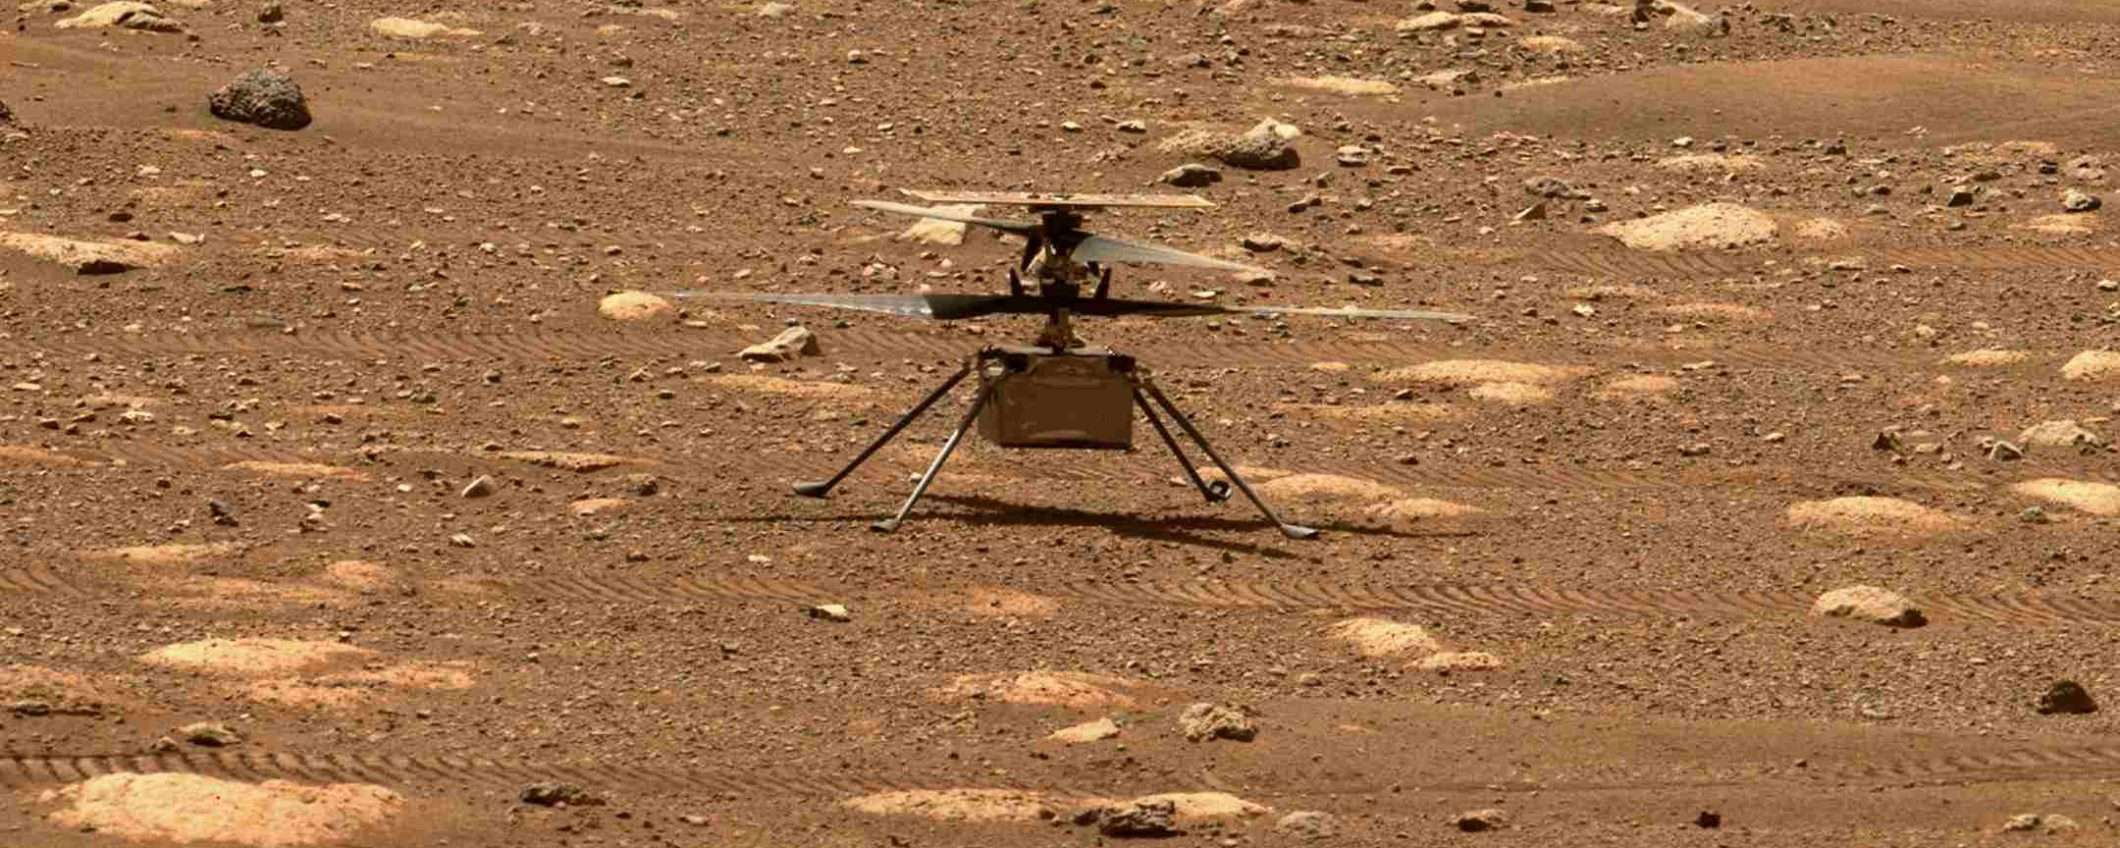 Ingenuity vola su Marte, prime immagini